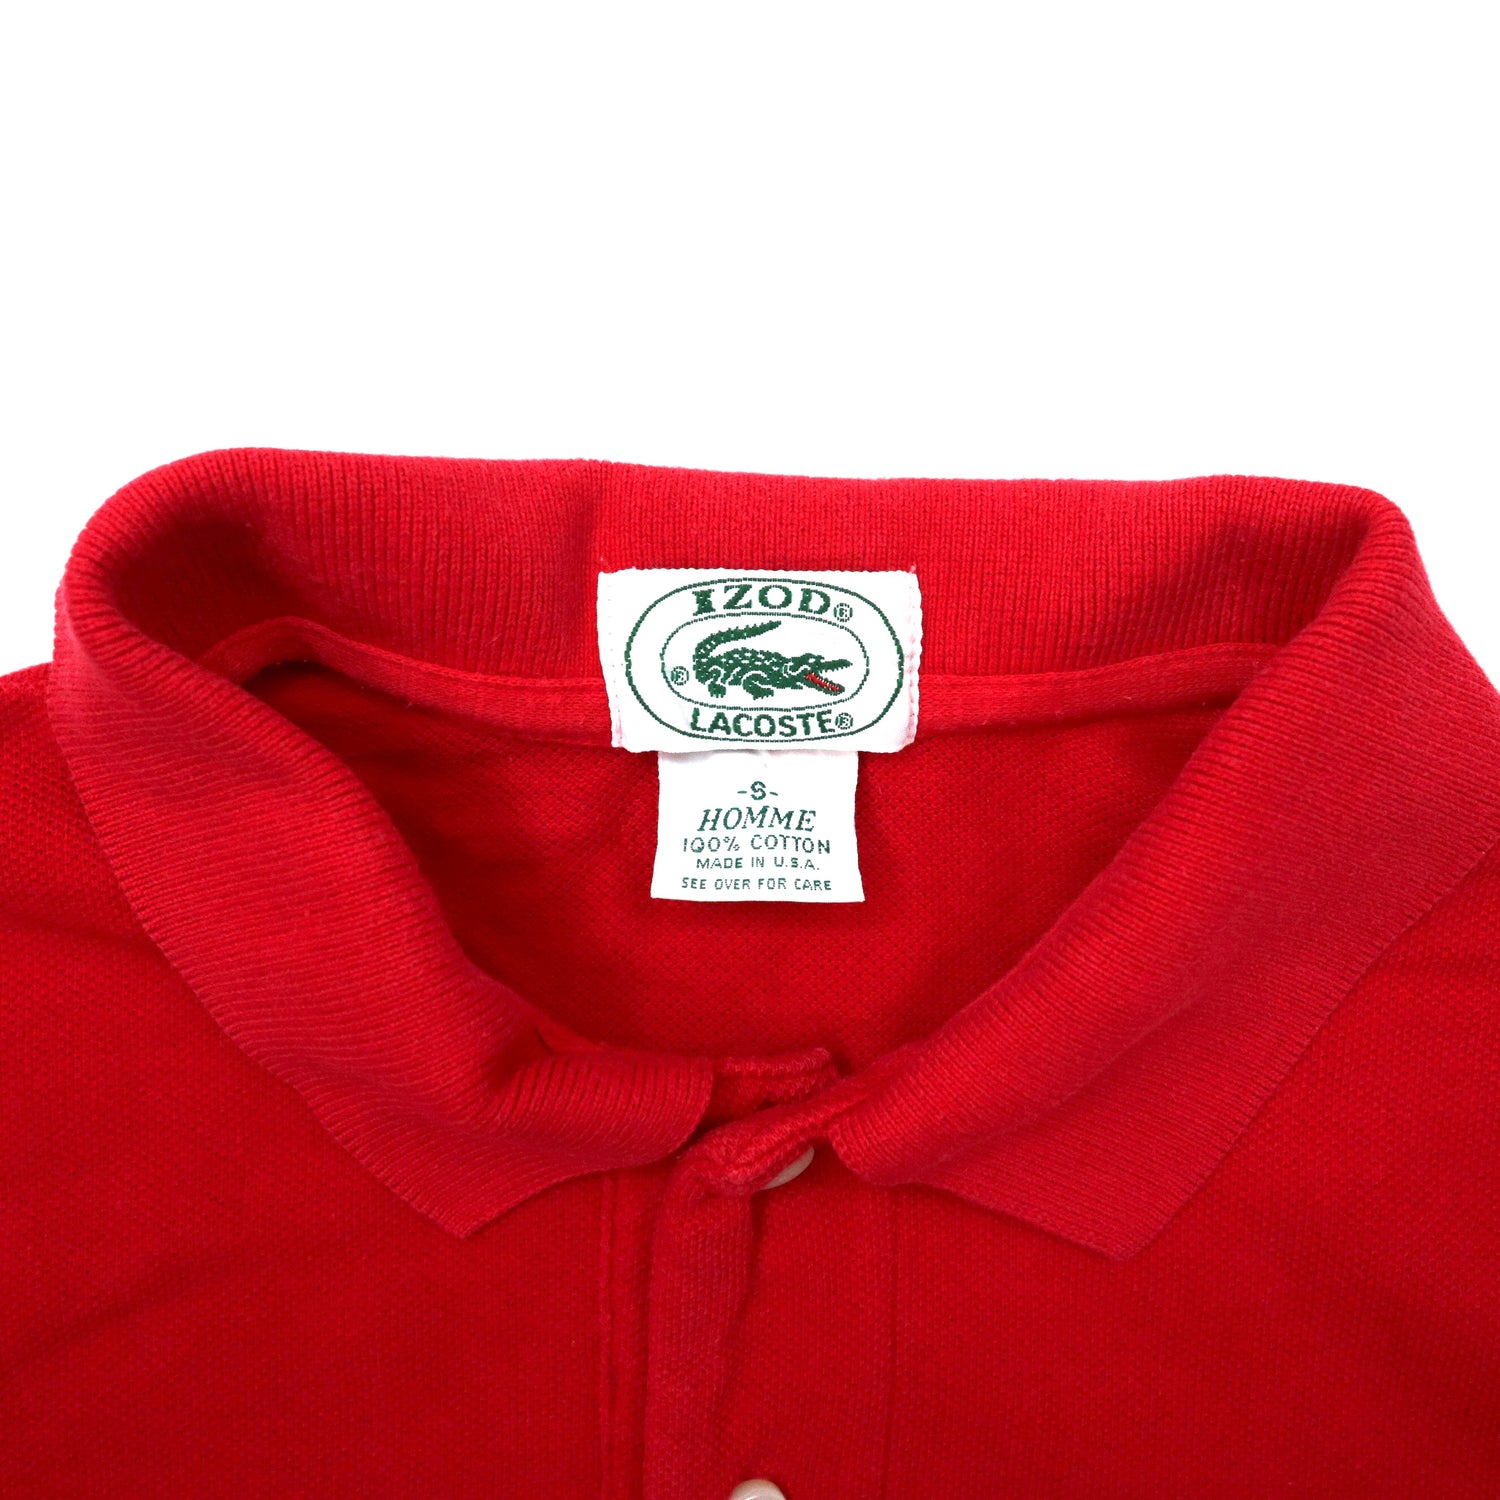 USA製 IZOD LACOSTE ポロシャツ S レッド コットン ワンポイントロゴ 